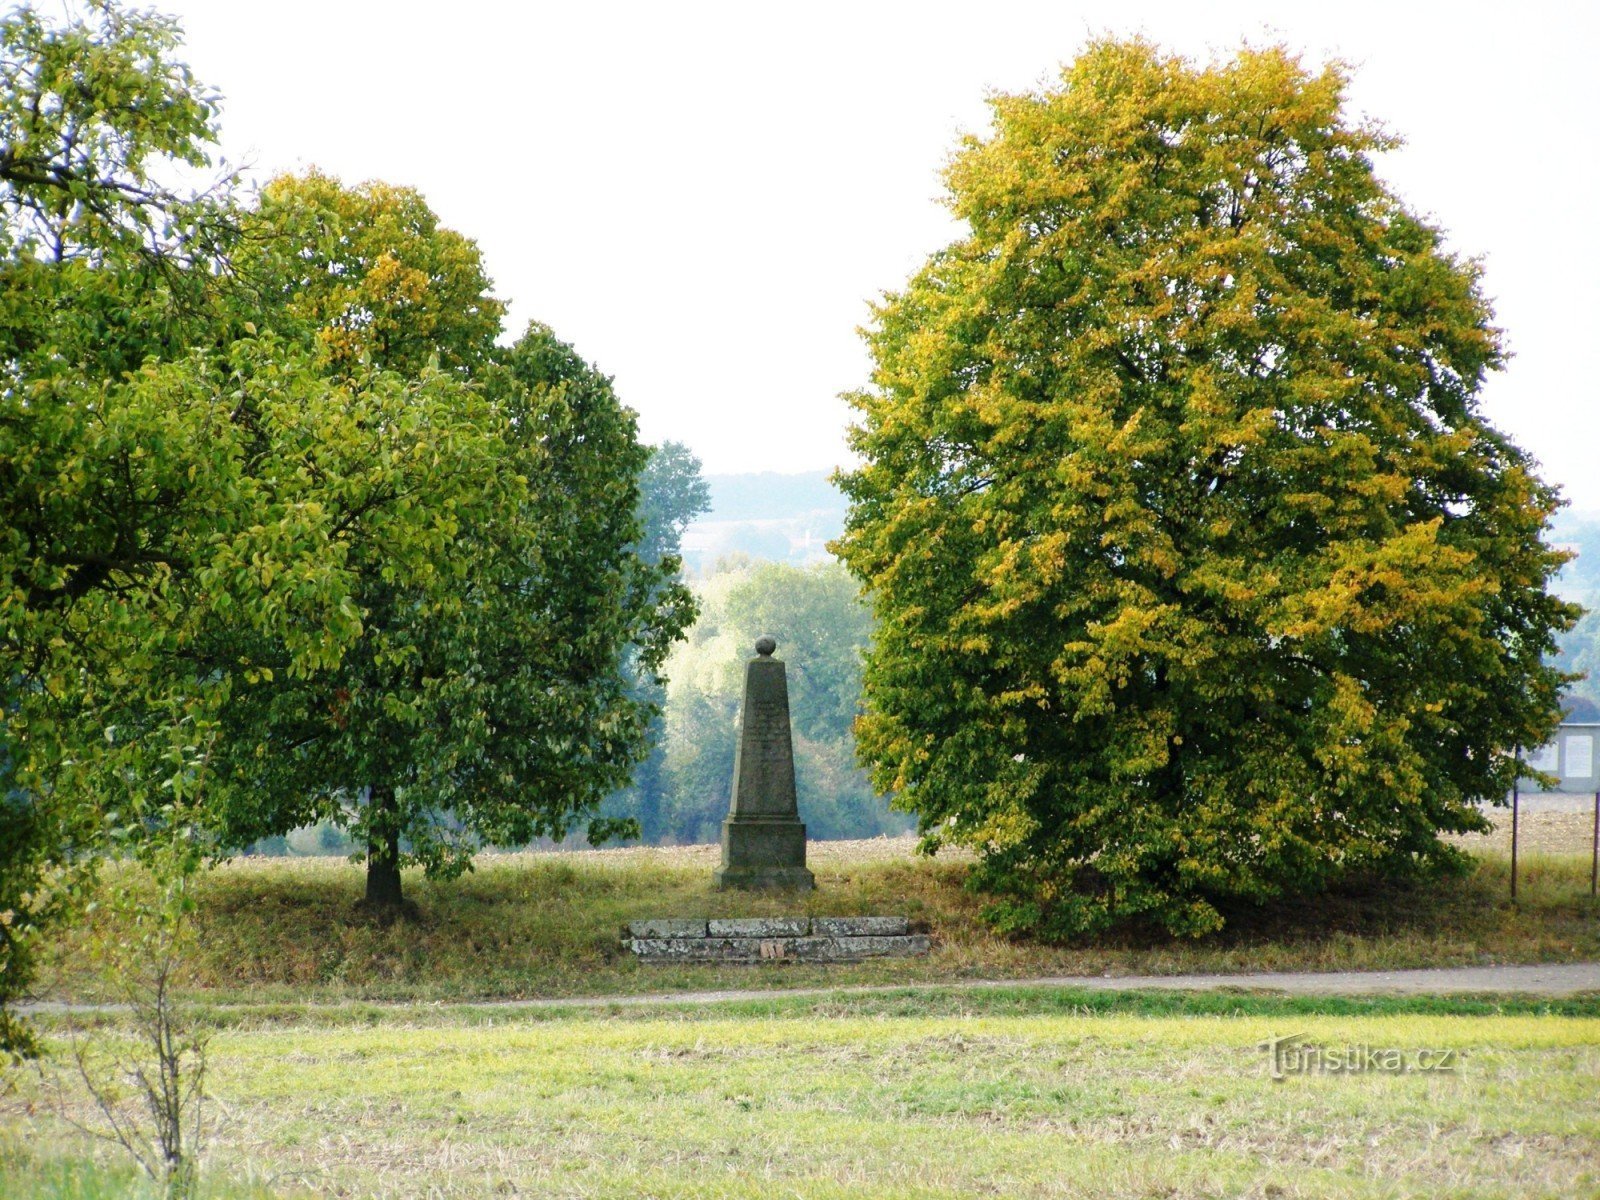 Čisteves - muistomerkki Preussin 2. Magdeburgin jalkaväkirykmentille nro 27